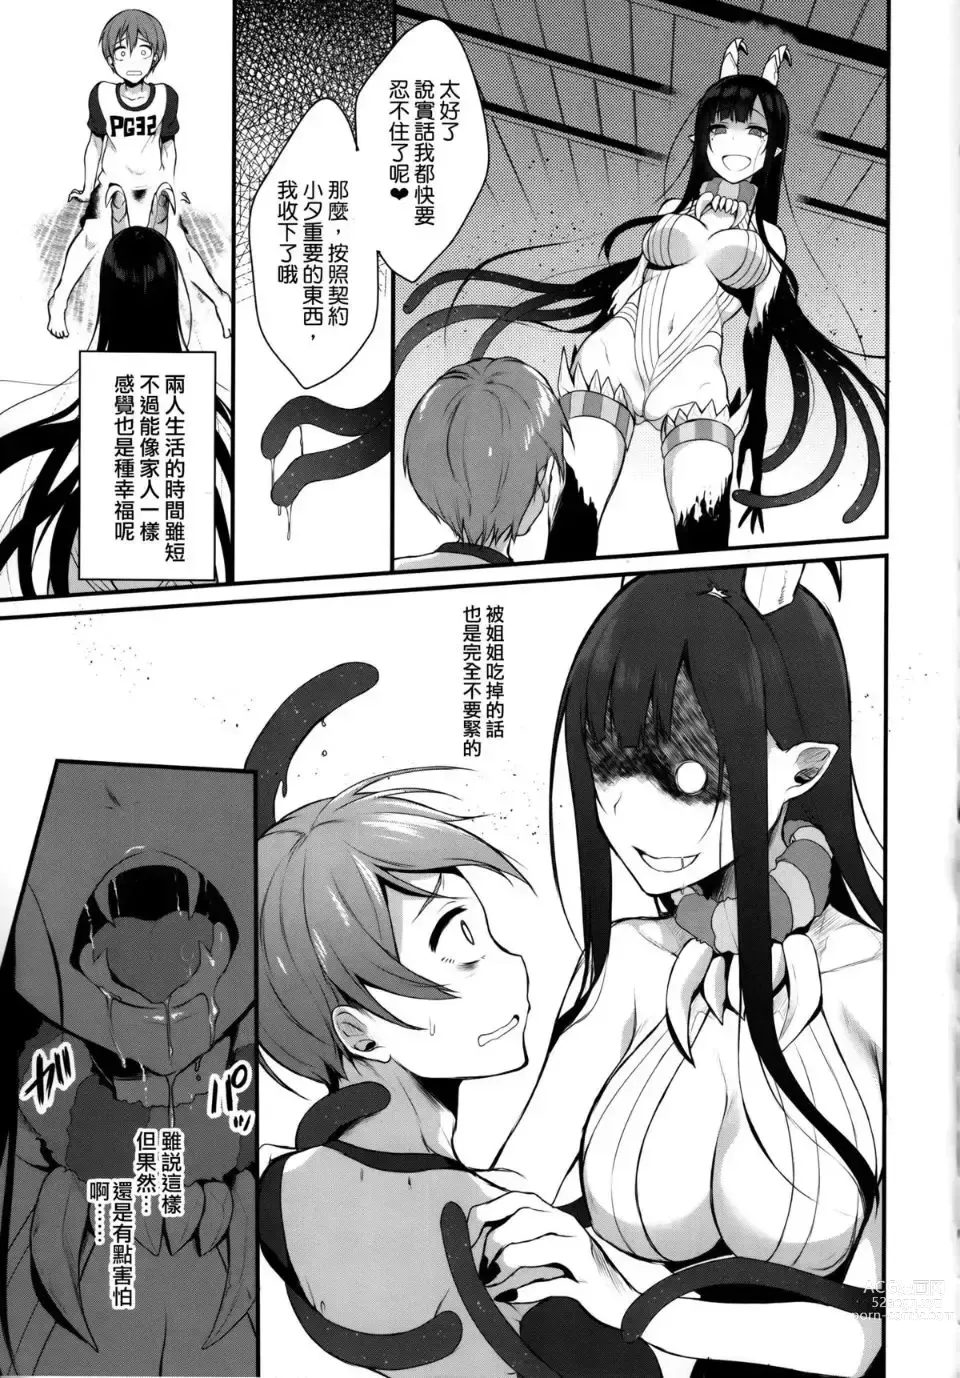 Page 6 of doujinshi 姉なるもの